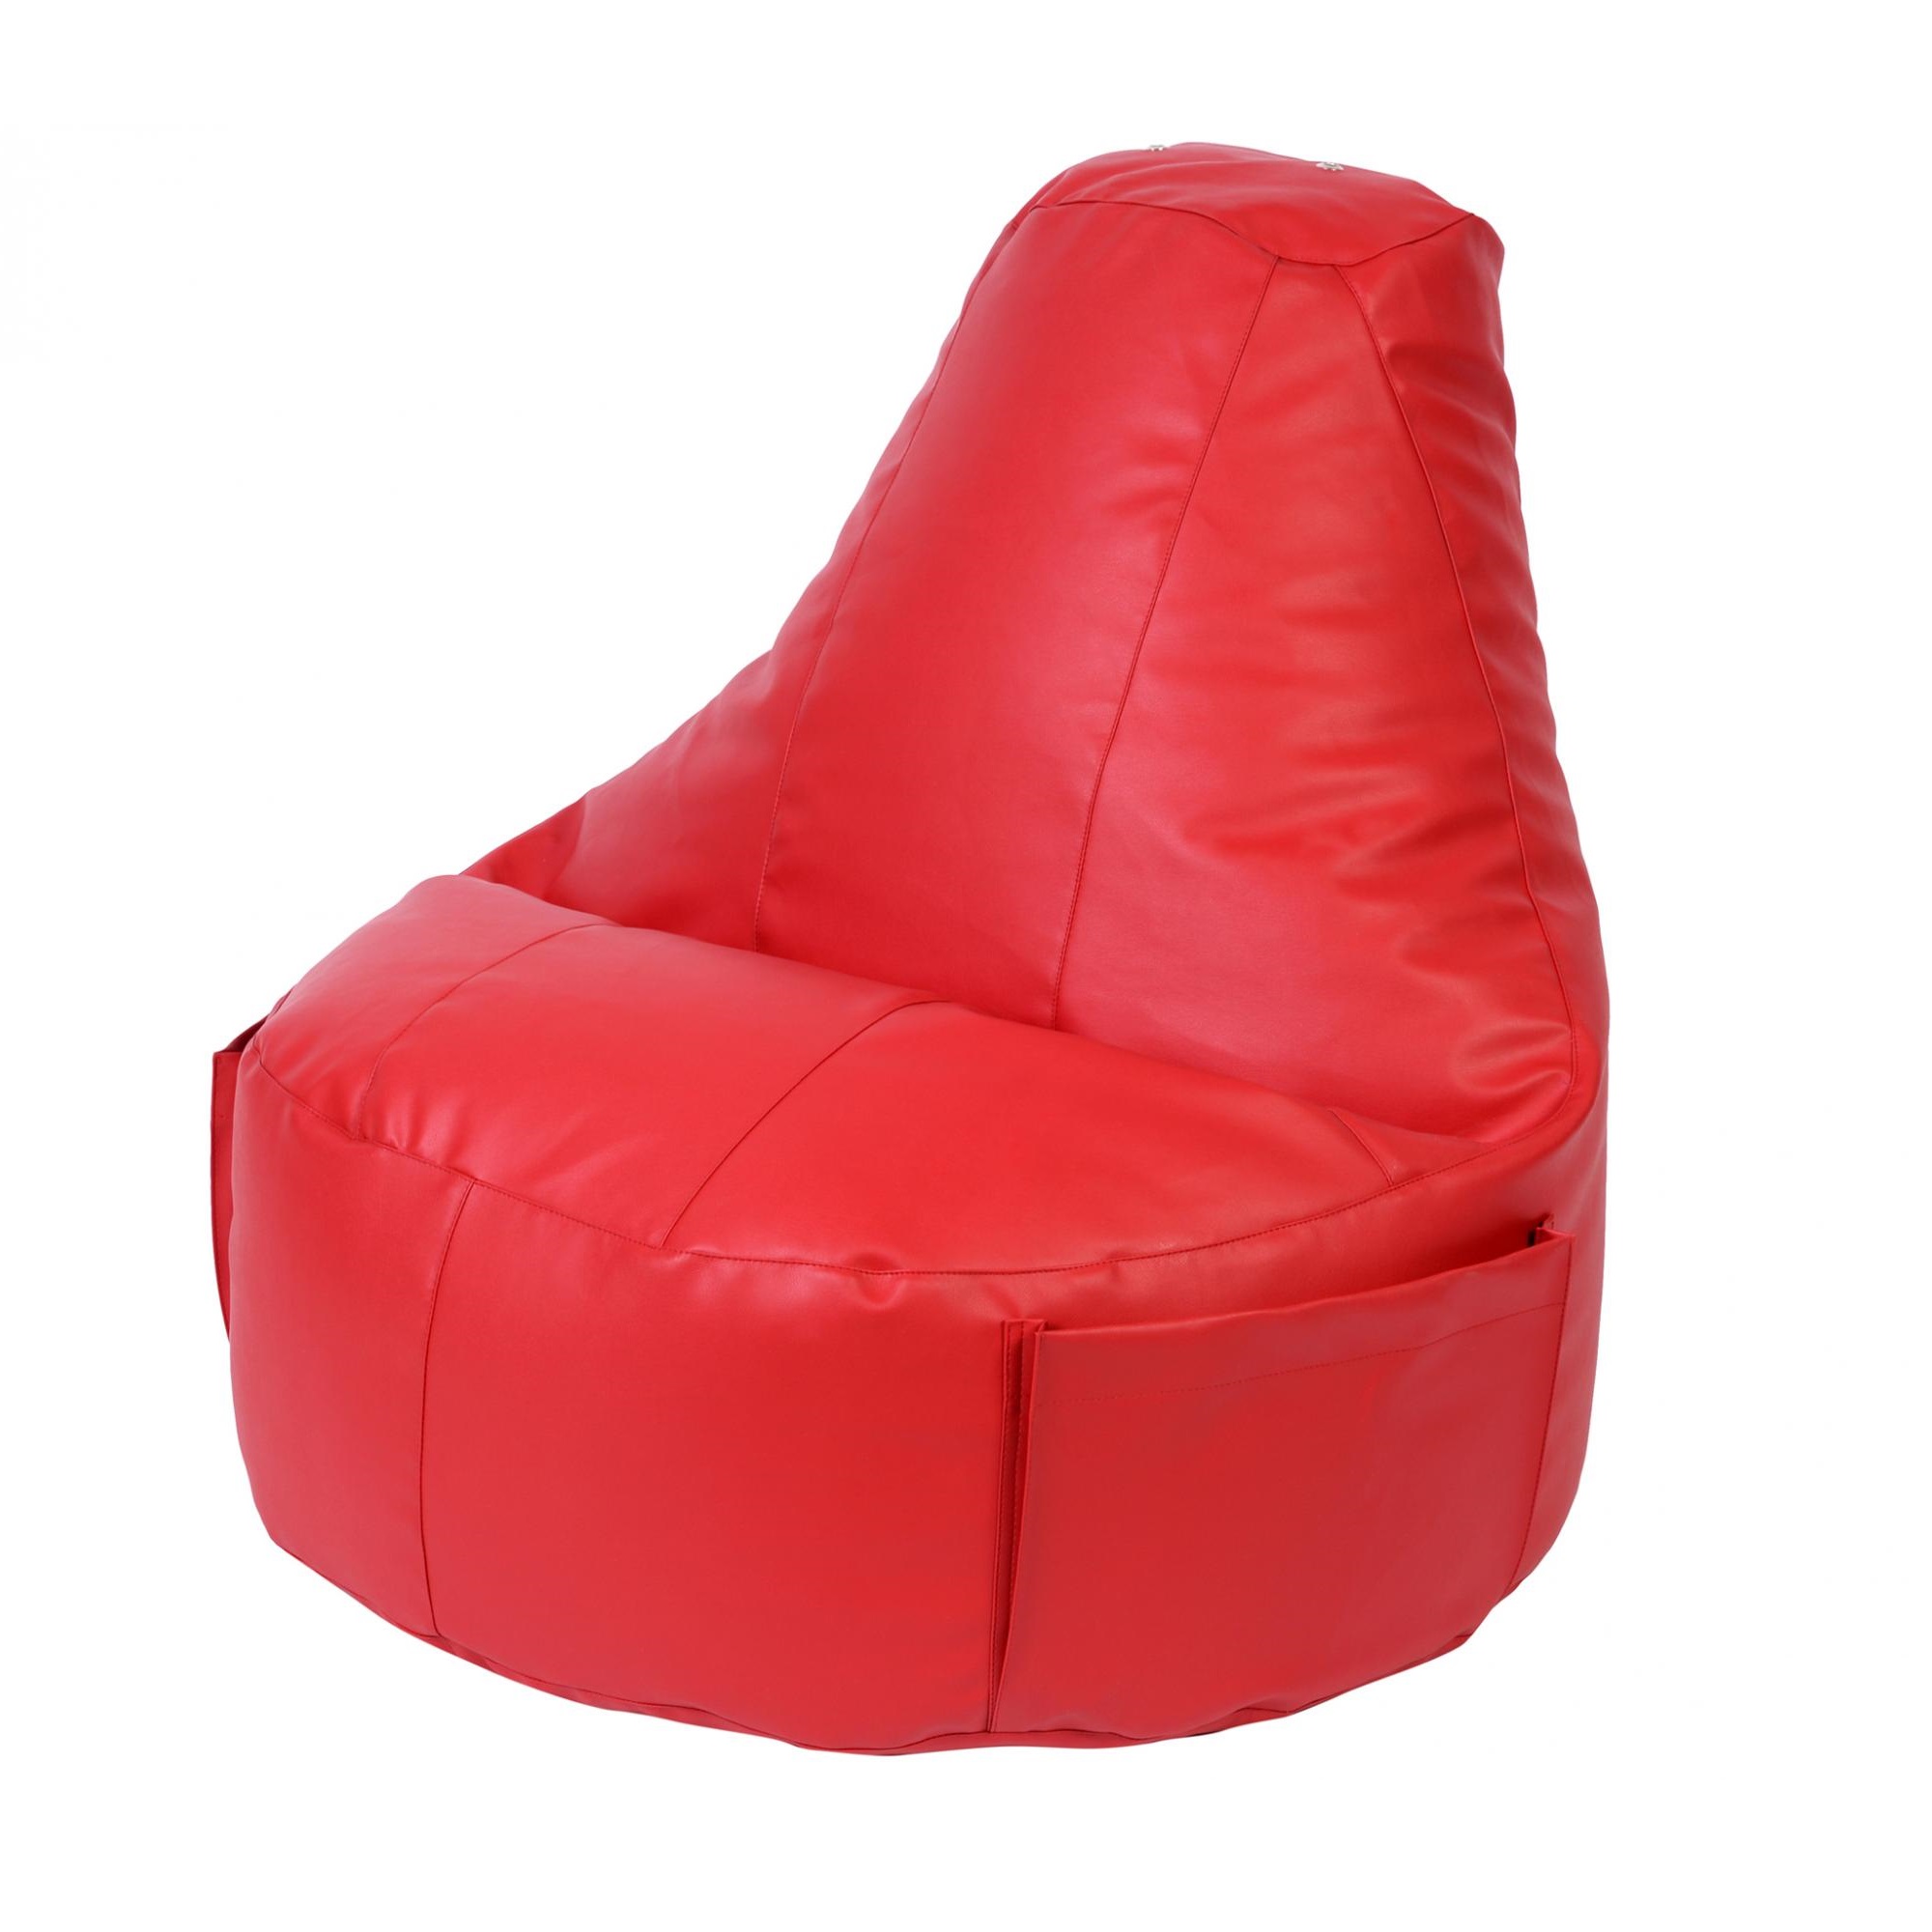 Кресло Dreambag Comfort красное экокожа 150x90 см кресло мешок конфетти красная экокожа